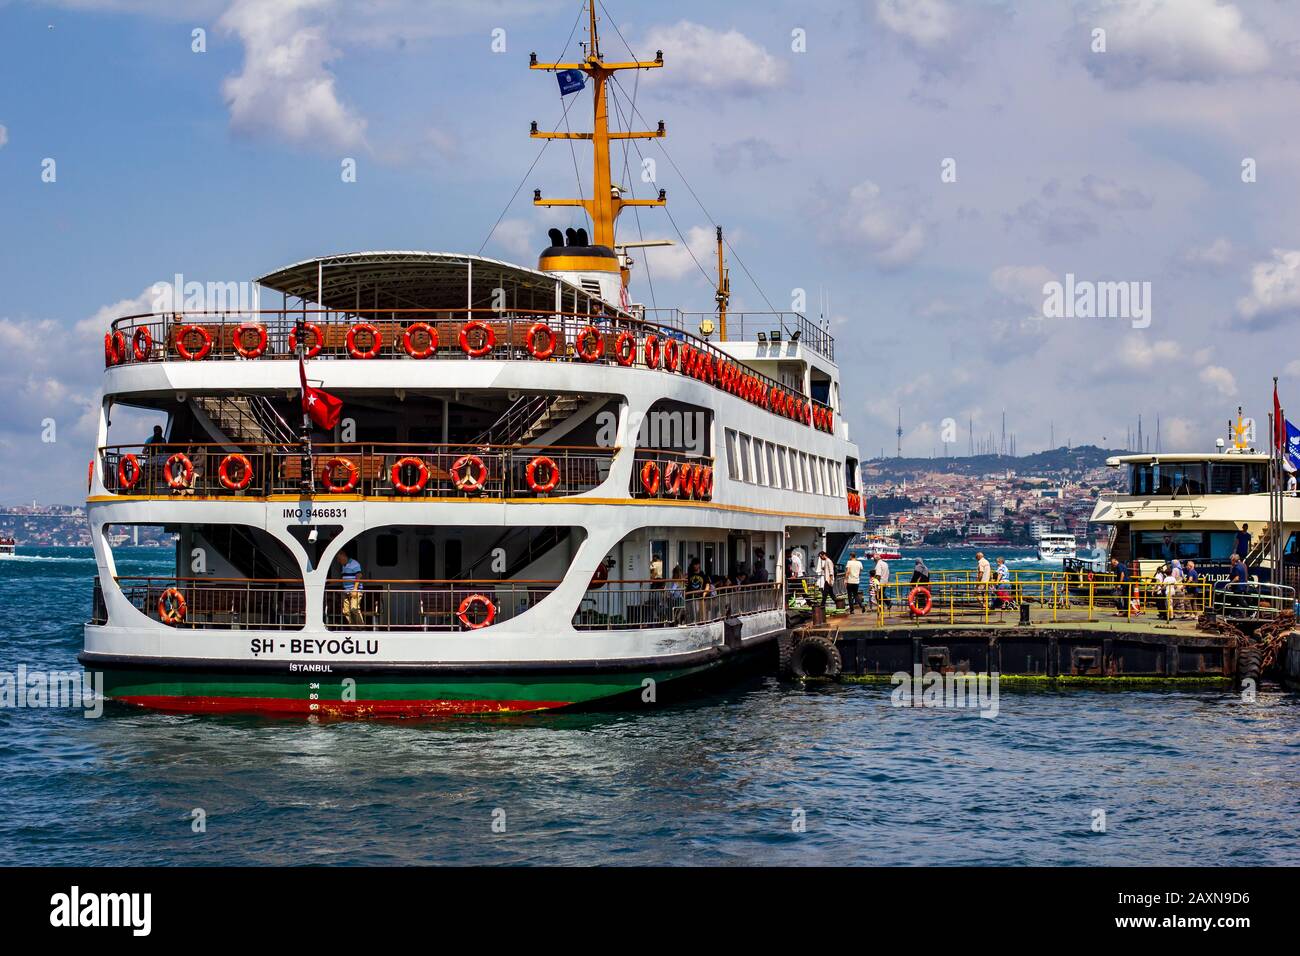 18. Juni 2019 - Istanbul, Türkei - Steigen Passagiere an Bord einer Fähre, während sie am Ufer des Goldenen Horns angedockt sind Stockfoto